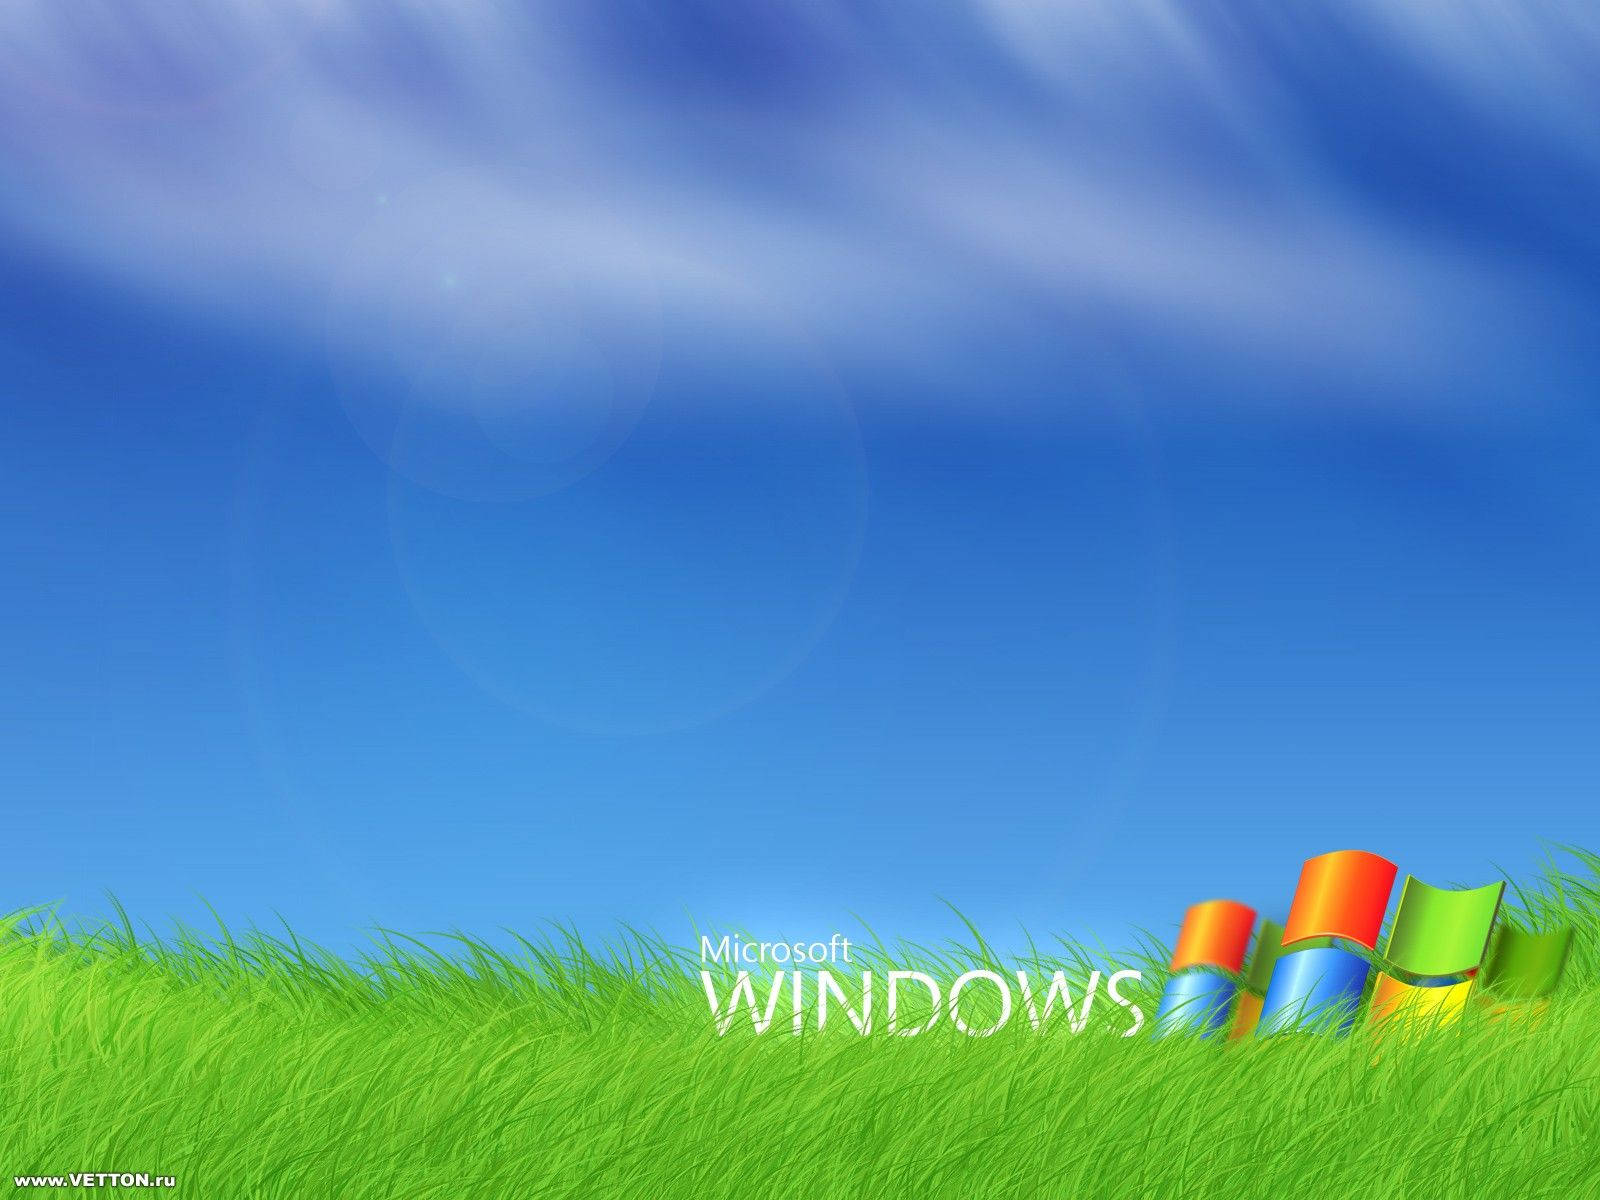 Windows Xp Grass Field Wallpaper